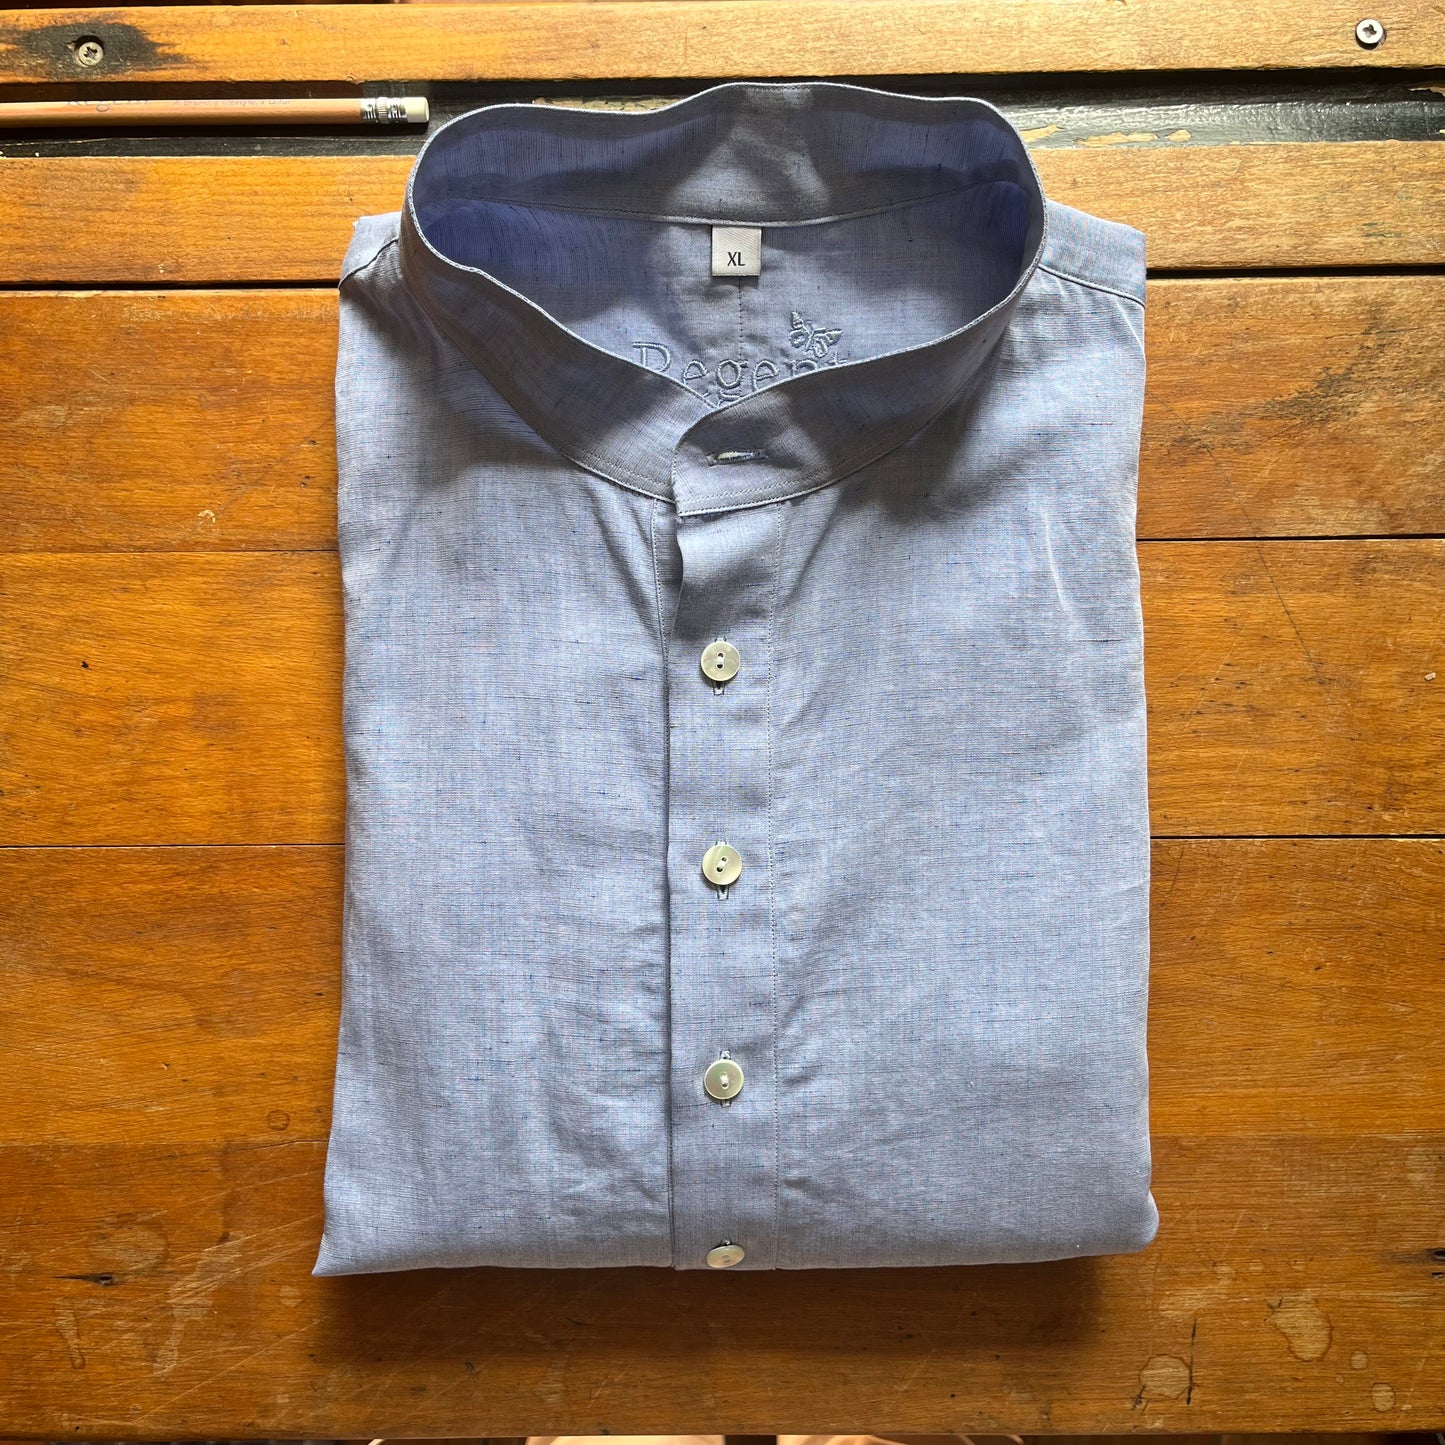 Cotton linen blue grandad collar shirt